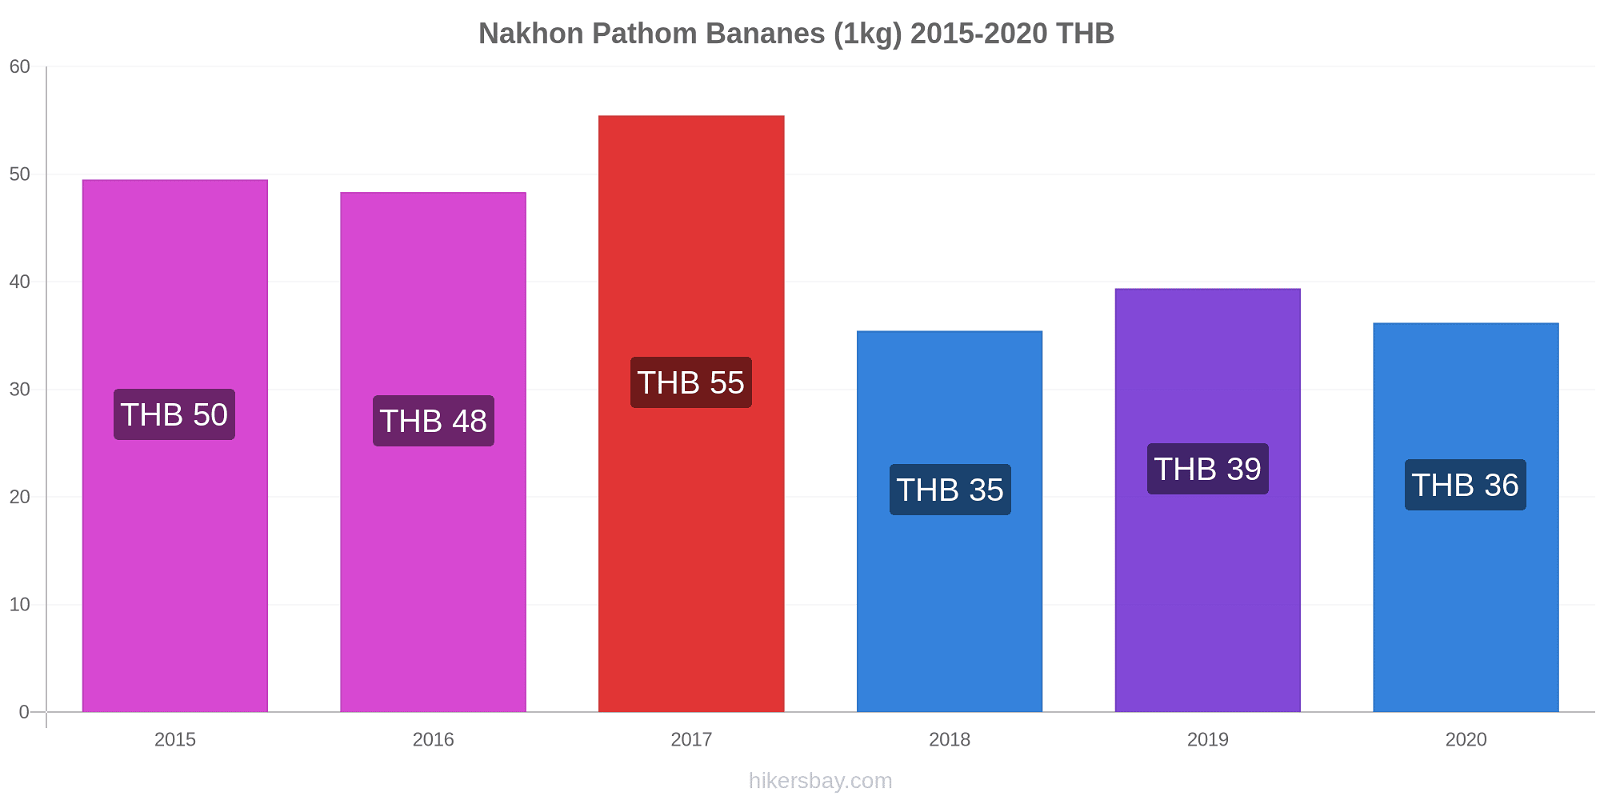 Nakhon Pathom changements de prix Bananes (1kg) hikersbay.com